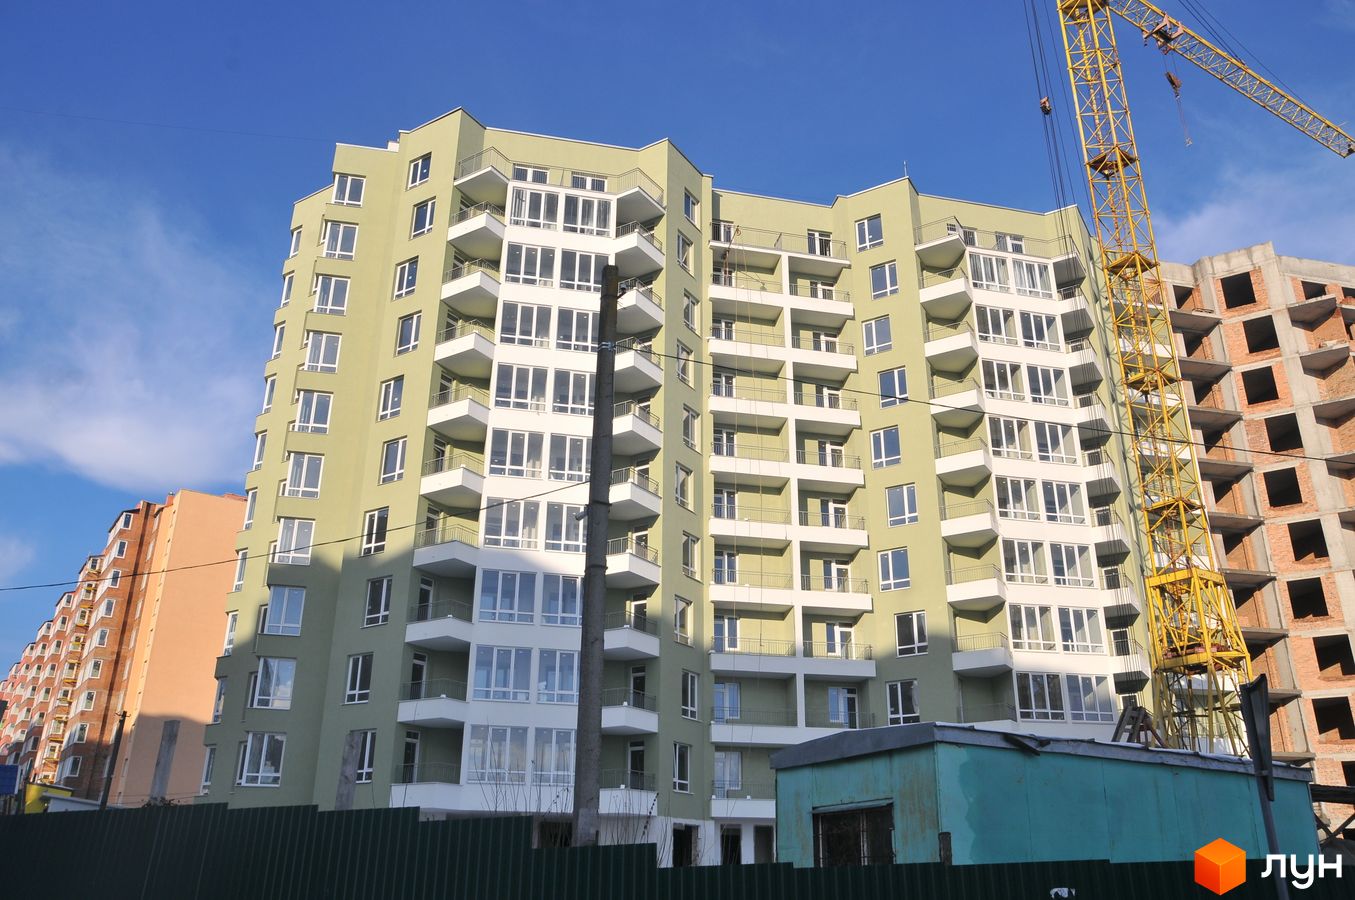 Моніторинг будівництва ЖК Сихівська околиця - Ракурс 2, січень 2019